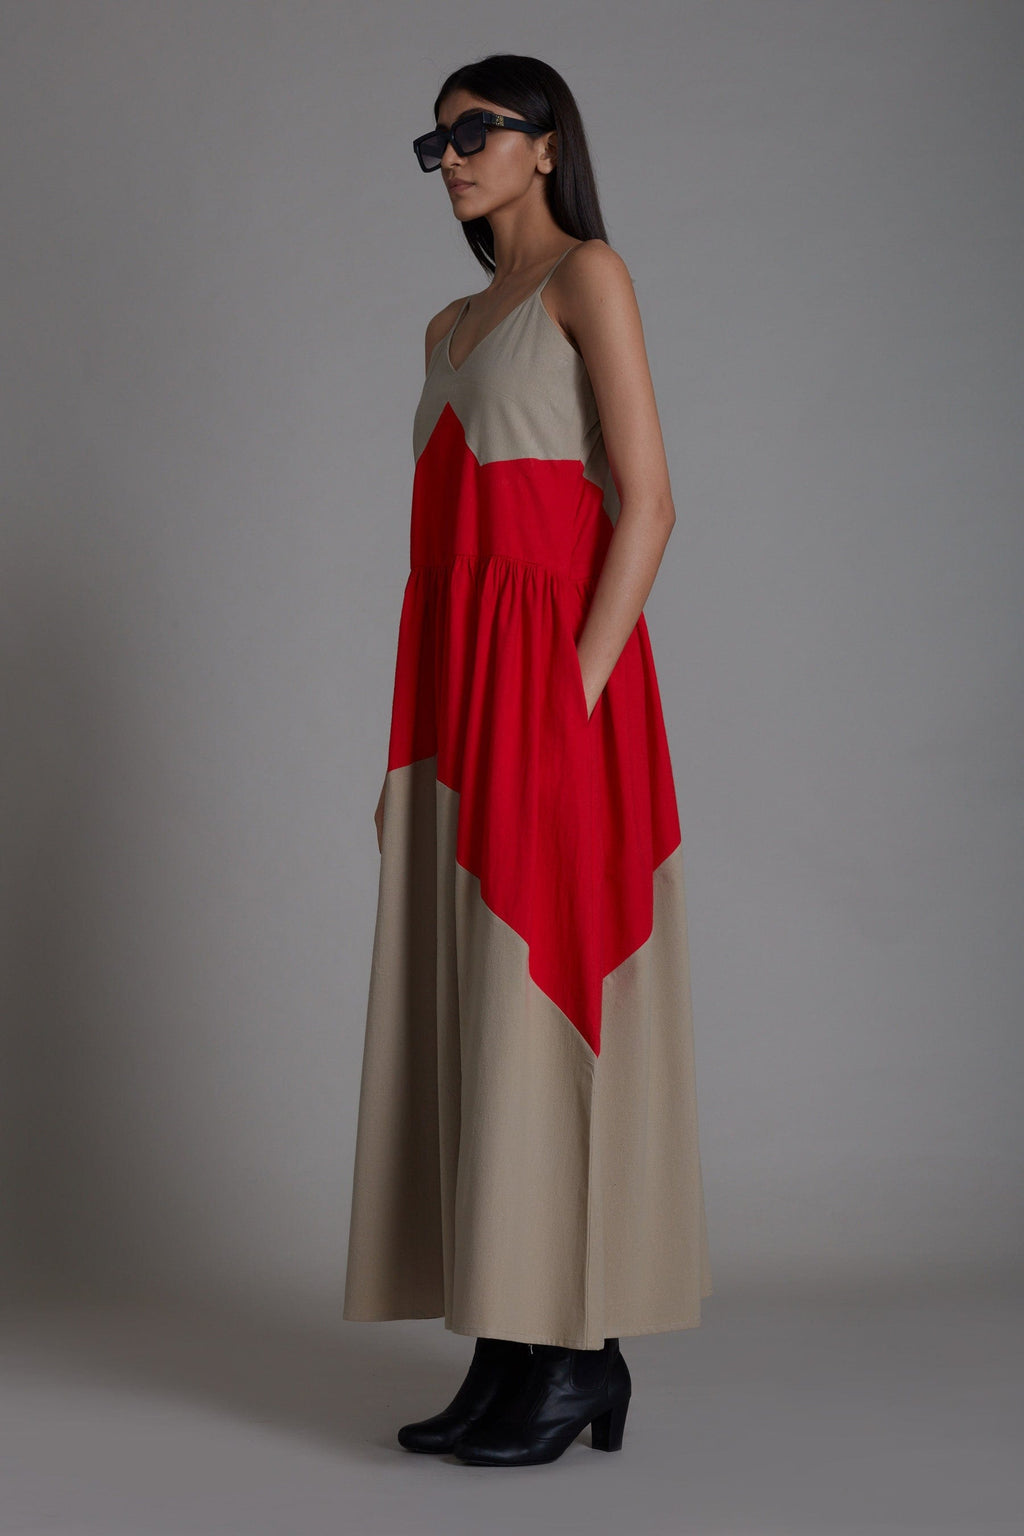 Mati Dresses Strap Beige & Red Dress